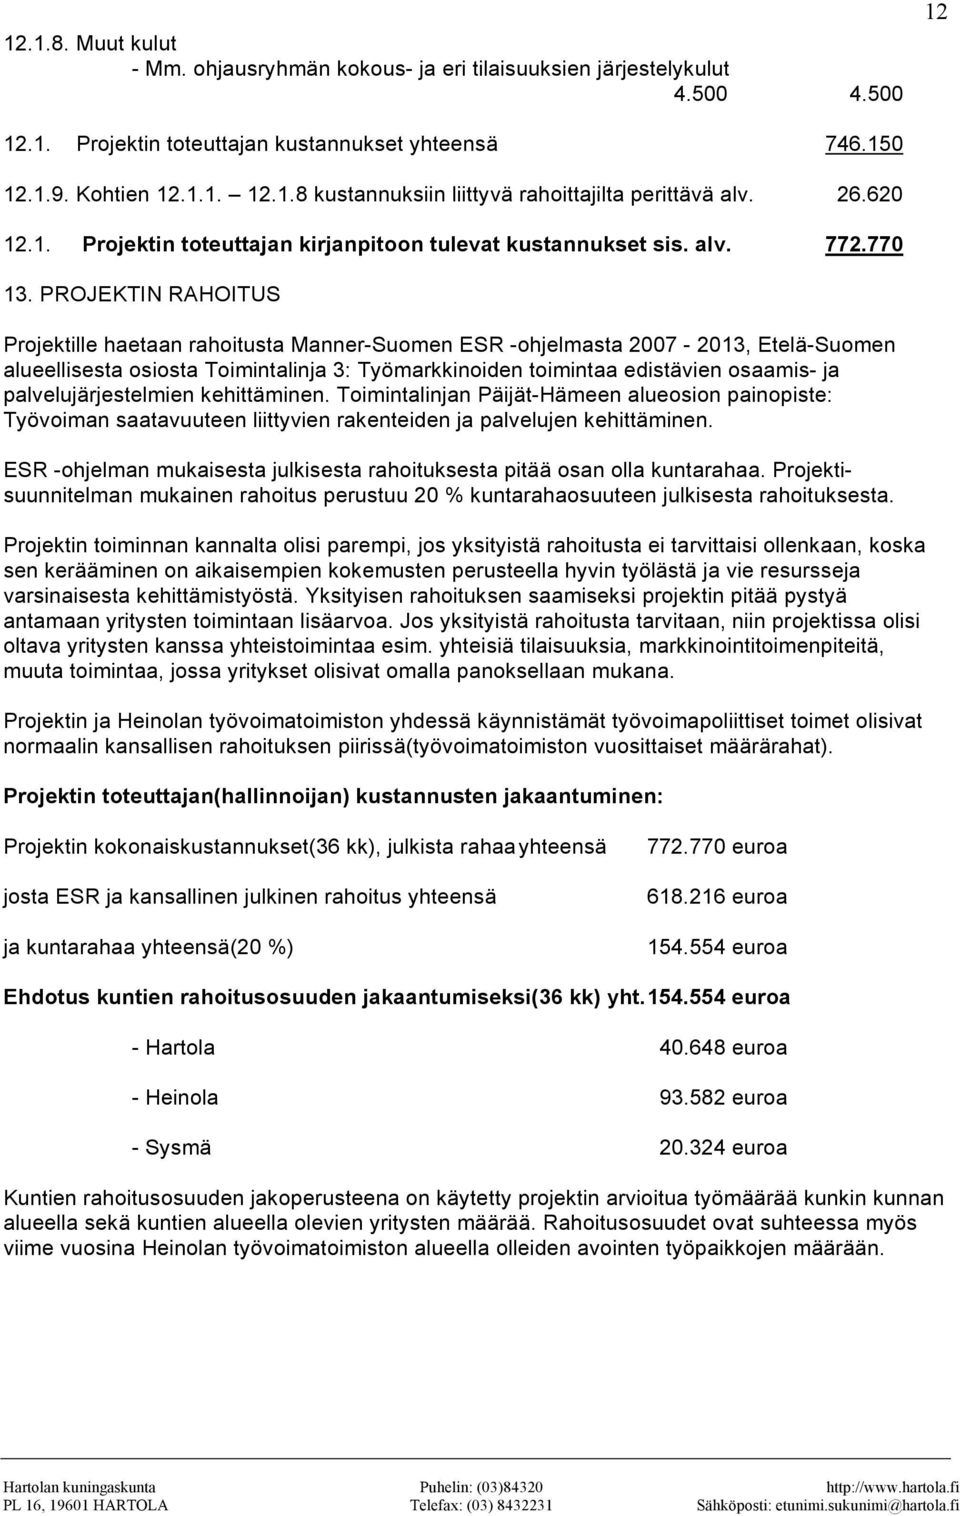 PROJEKTIN RAHOITUS Projektille haetaan rahoitusta Manner-Suomen ESR -ohjelmasta 2007-2013, Etelä-Suomen alueellisesta osiosta Toimintalinja 3: Työmarkkinoiden toimintaa edistävien osaamis- ja